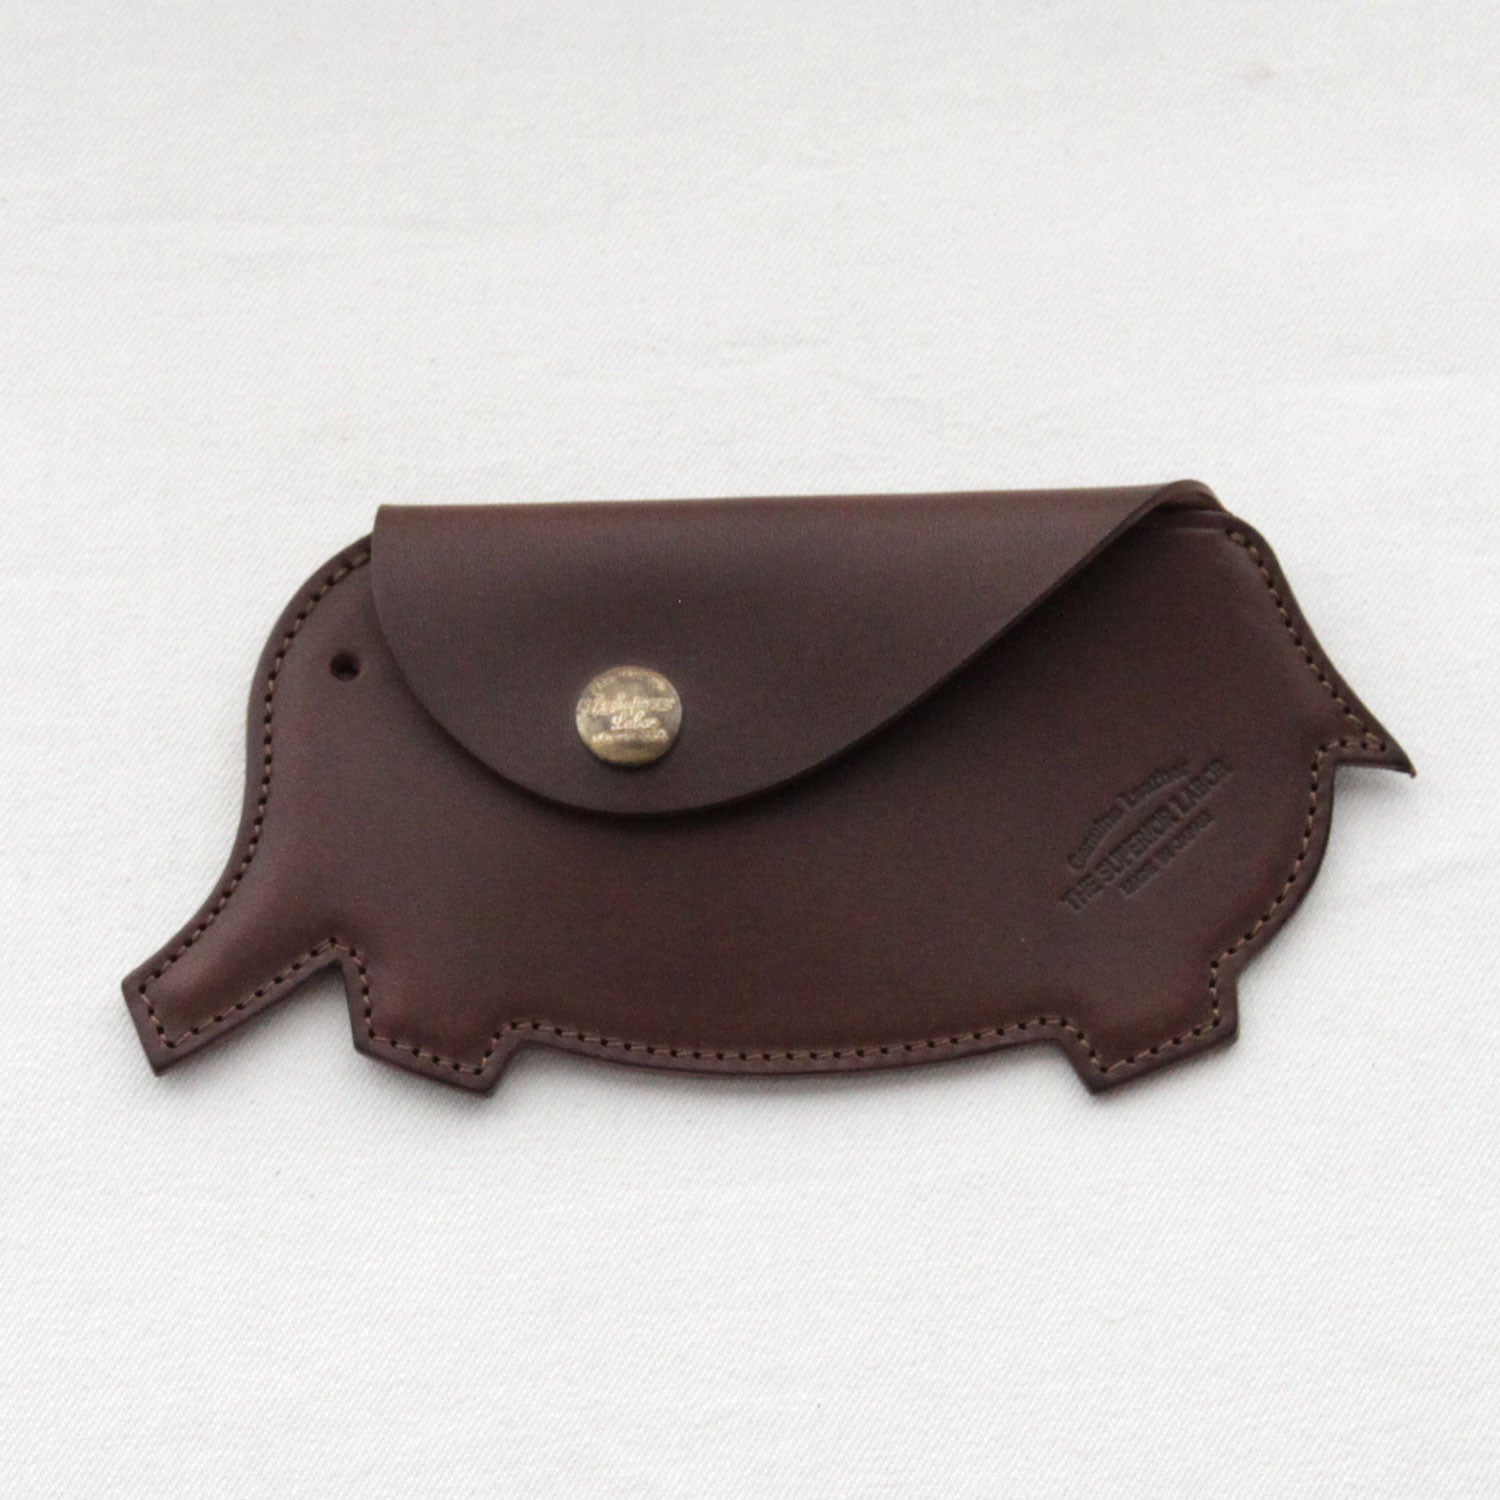 SL0137 elephant purse